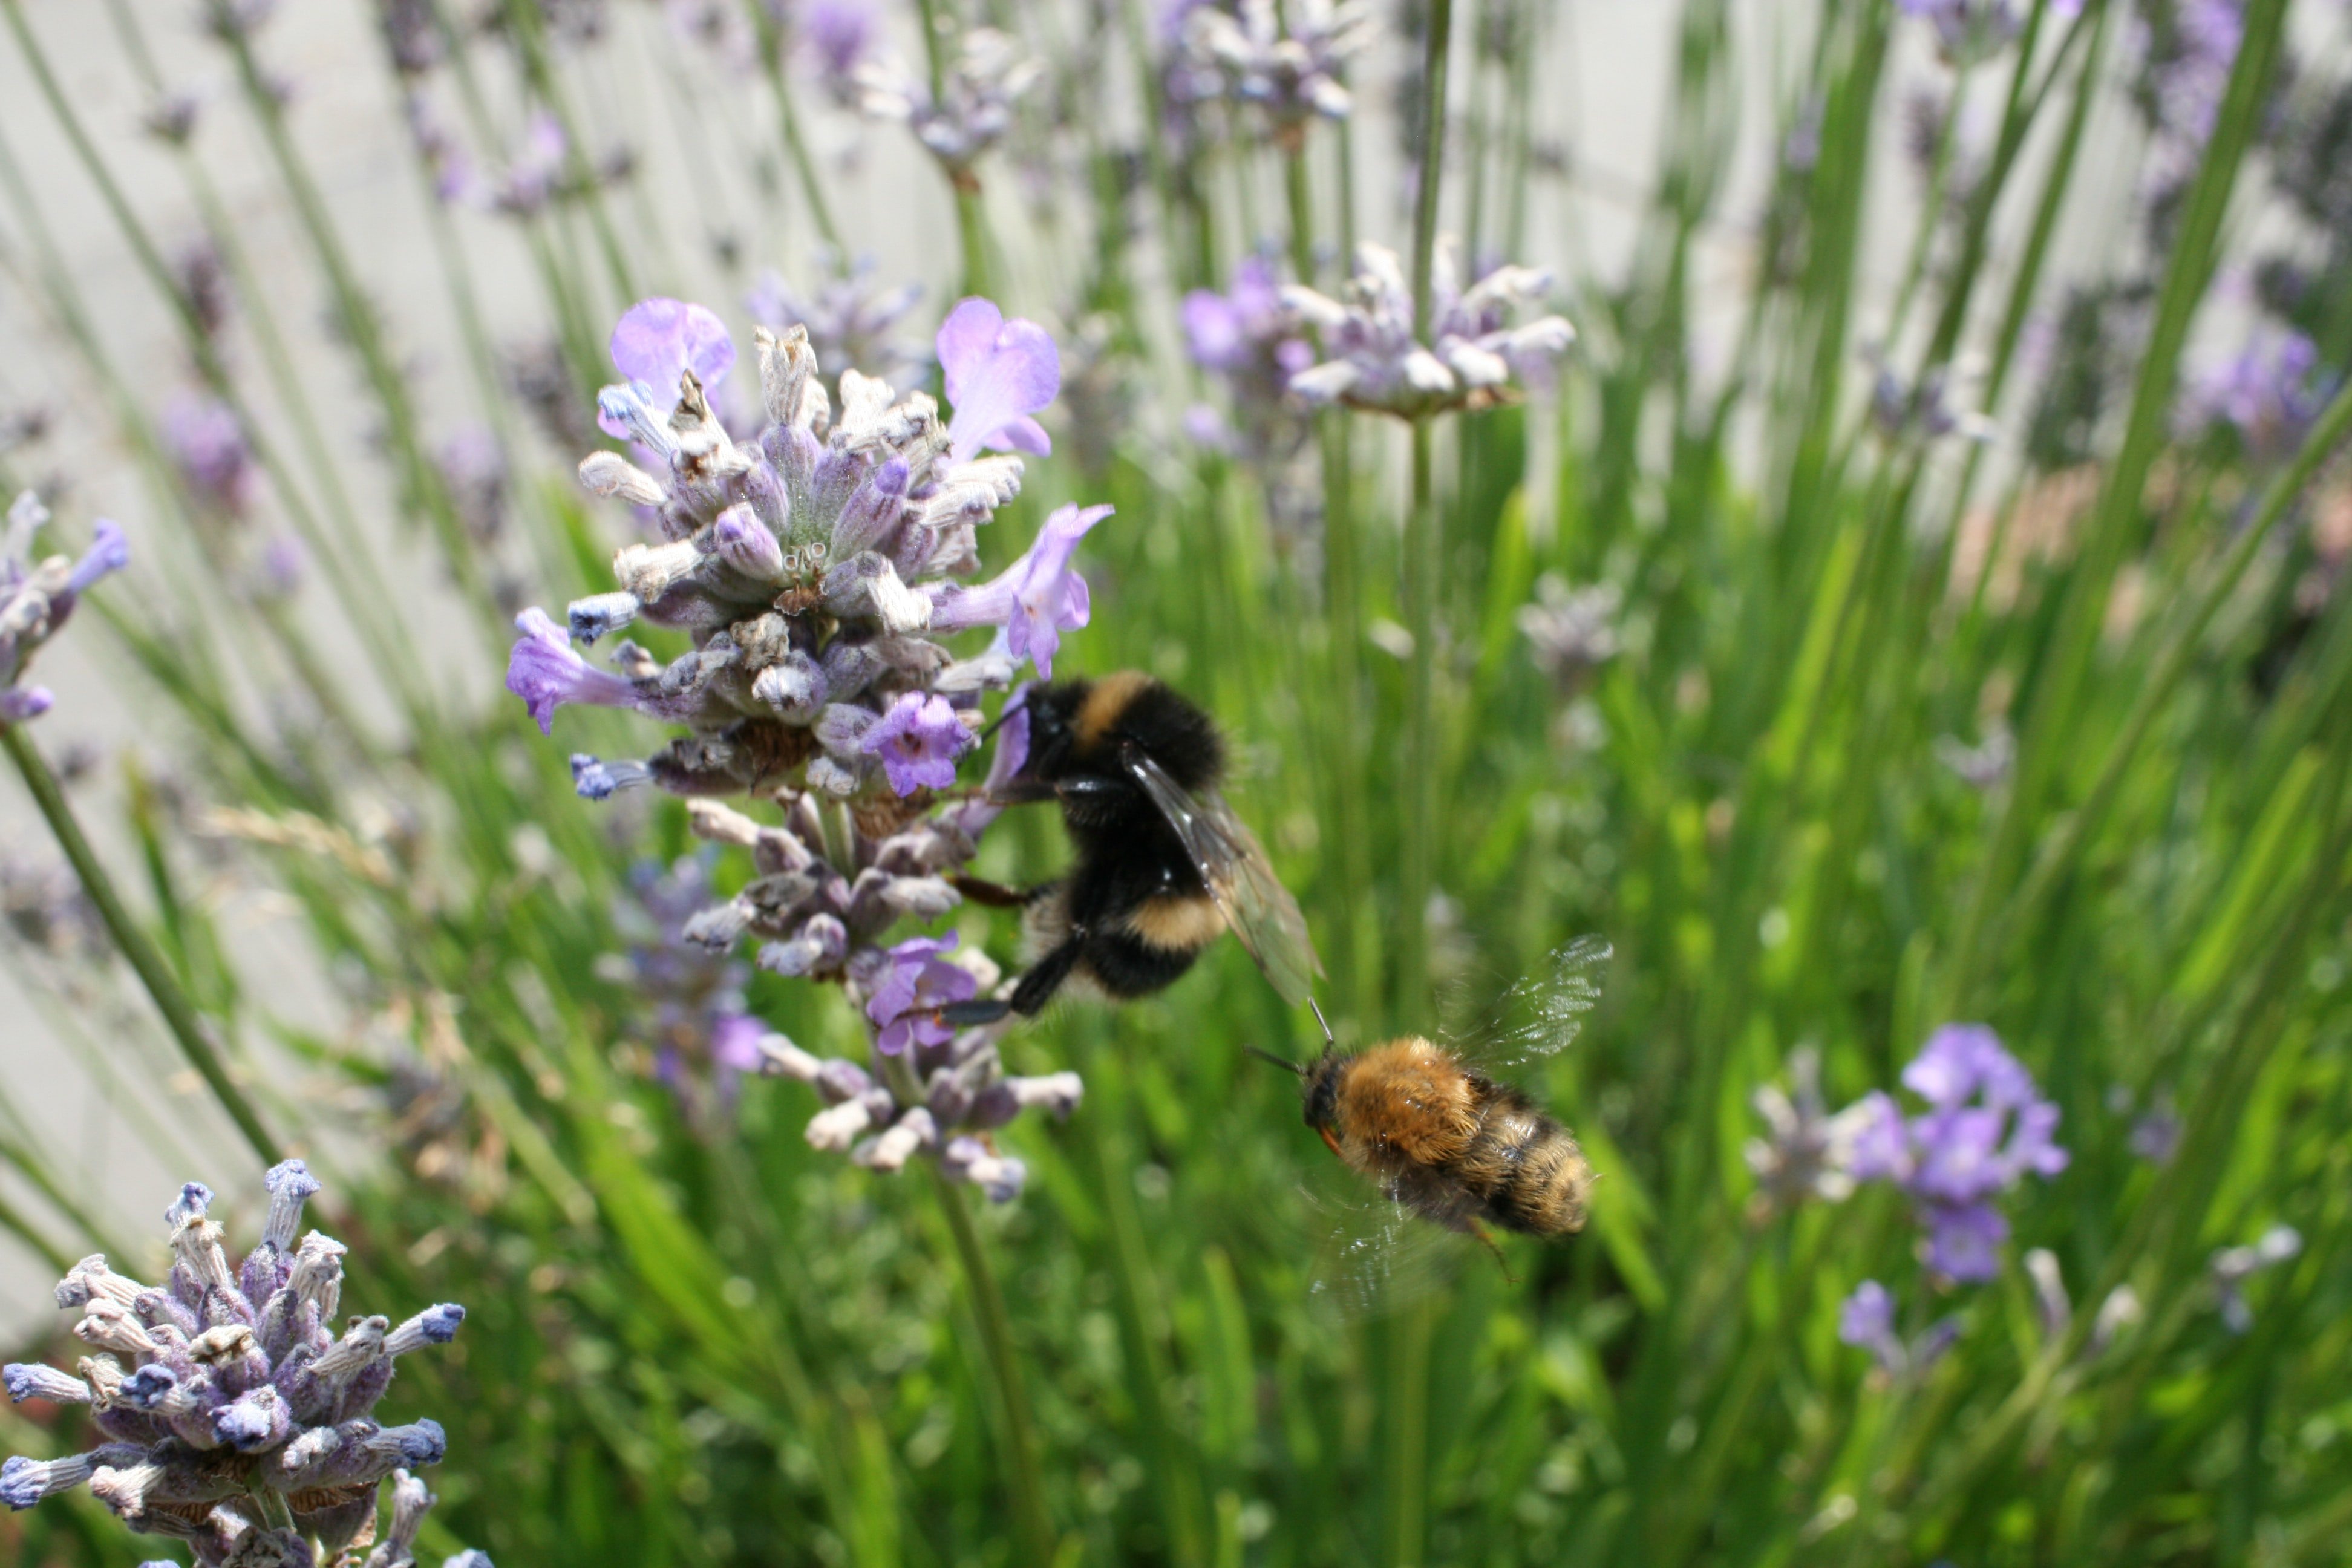 Provide plants for honeybees